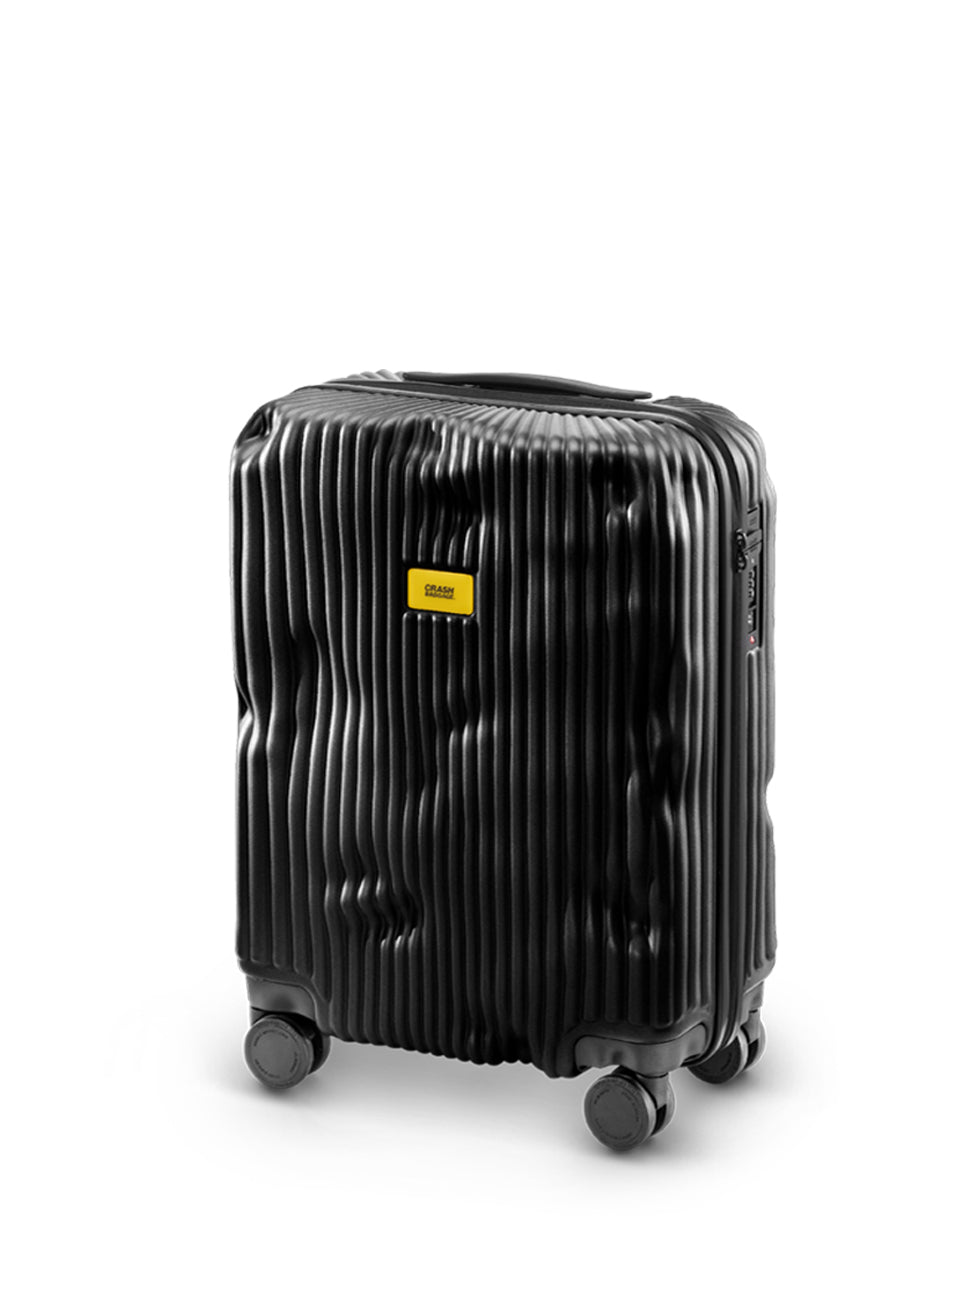 Crash Baggage Stripe Cabin 4 Wheel Luggage Trolleys, CB151 001, Black